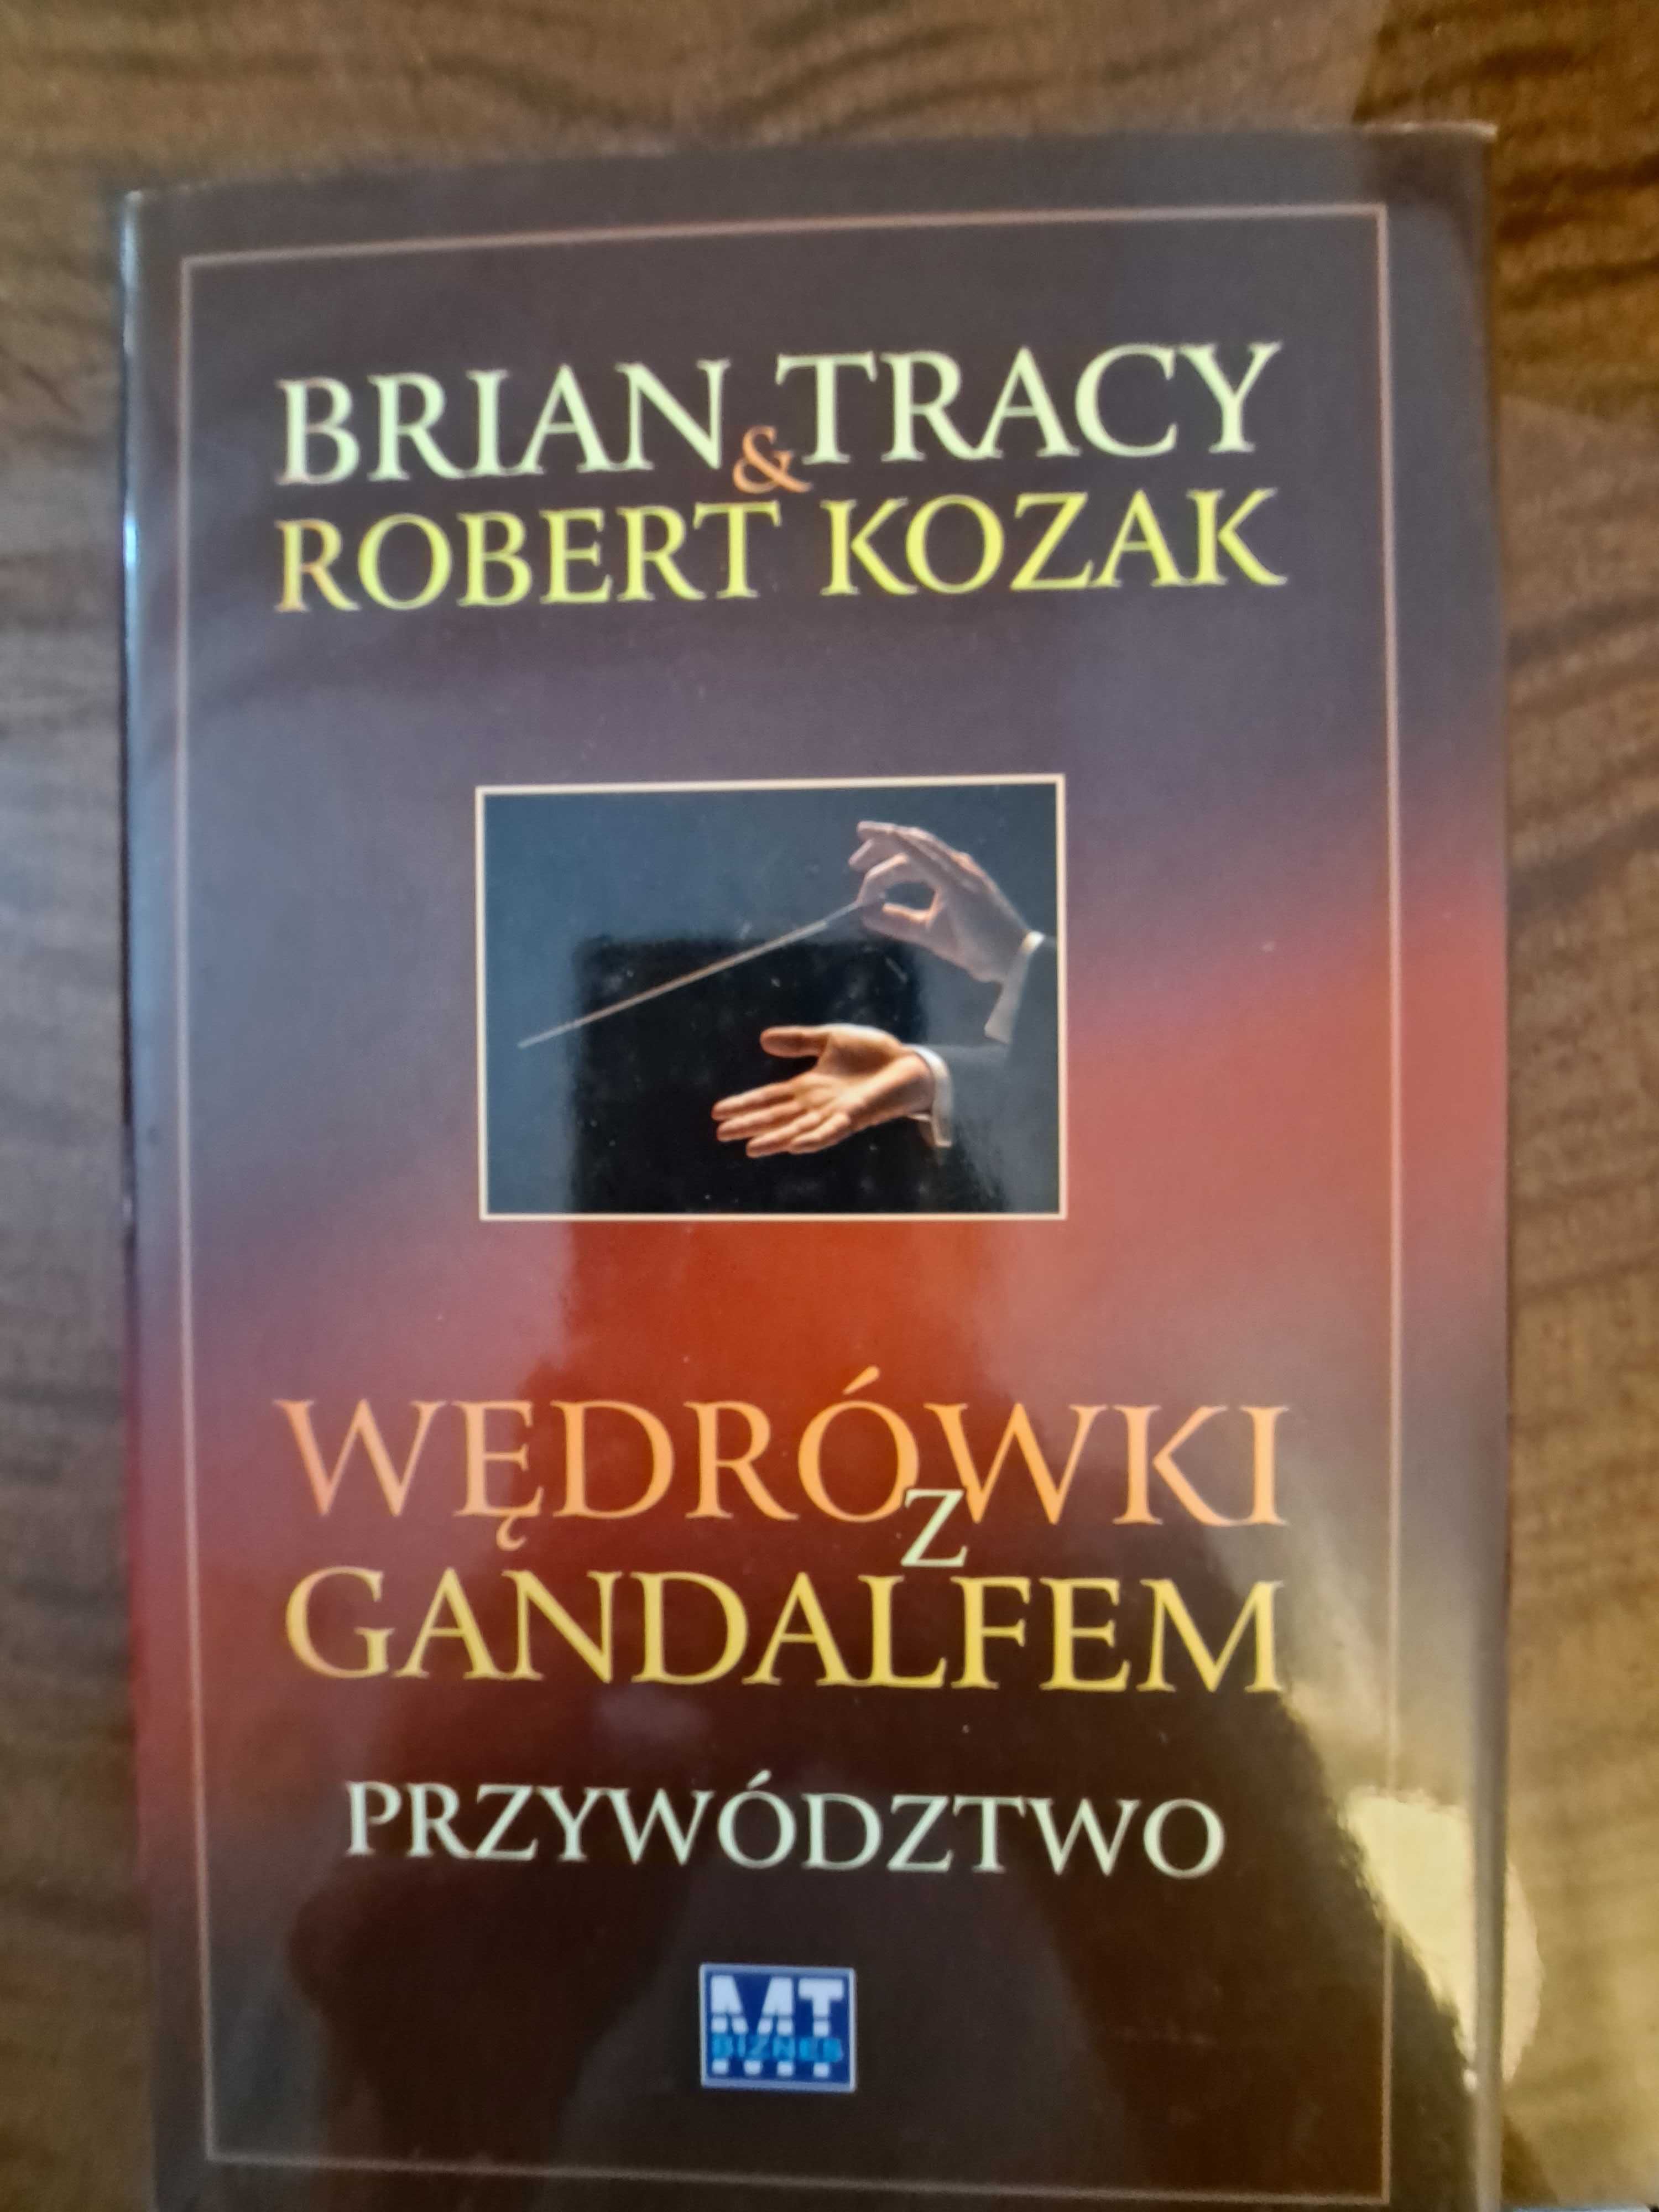 Brian Tracy, Robert Kozak " Wędrówki z Gandalfem. Przywództwo" +płyty